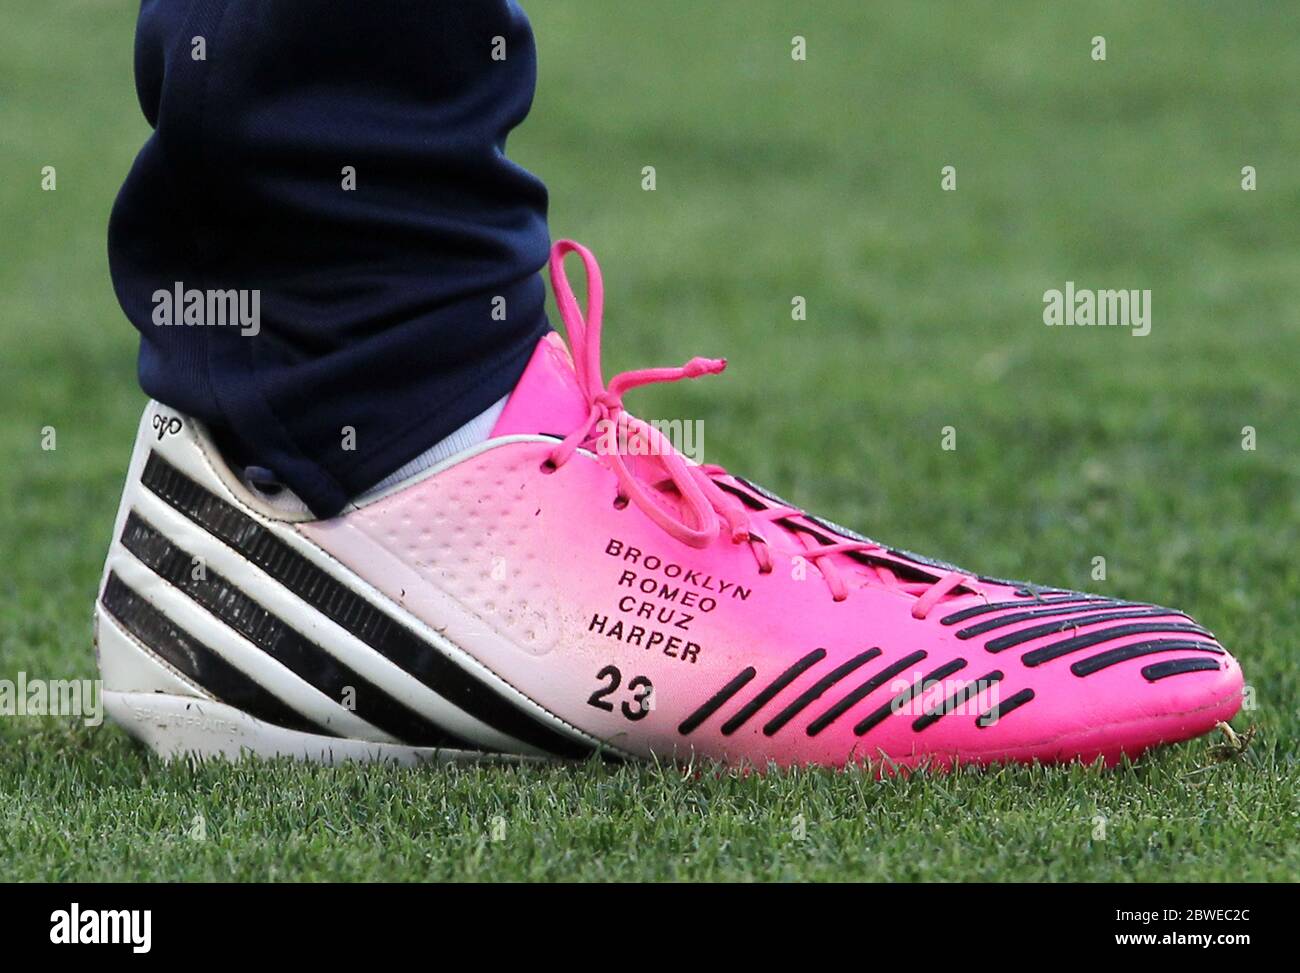 David Beckham lleva botas de fútbol de color rosa con sus nombres de niños  en ellos mientras él vino como sustituto en la derrota de LA Galaxy 1-0 a  Chivas USA, Carson,